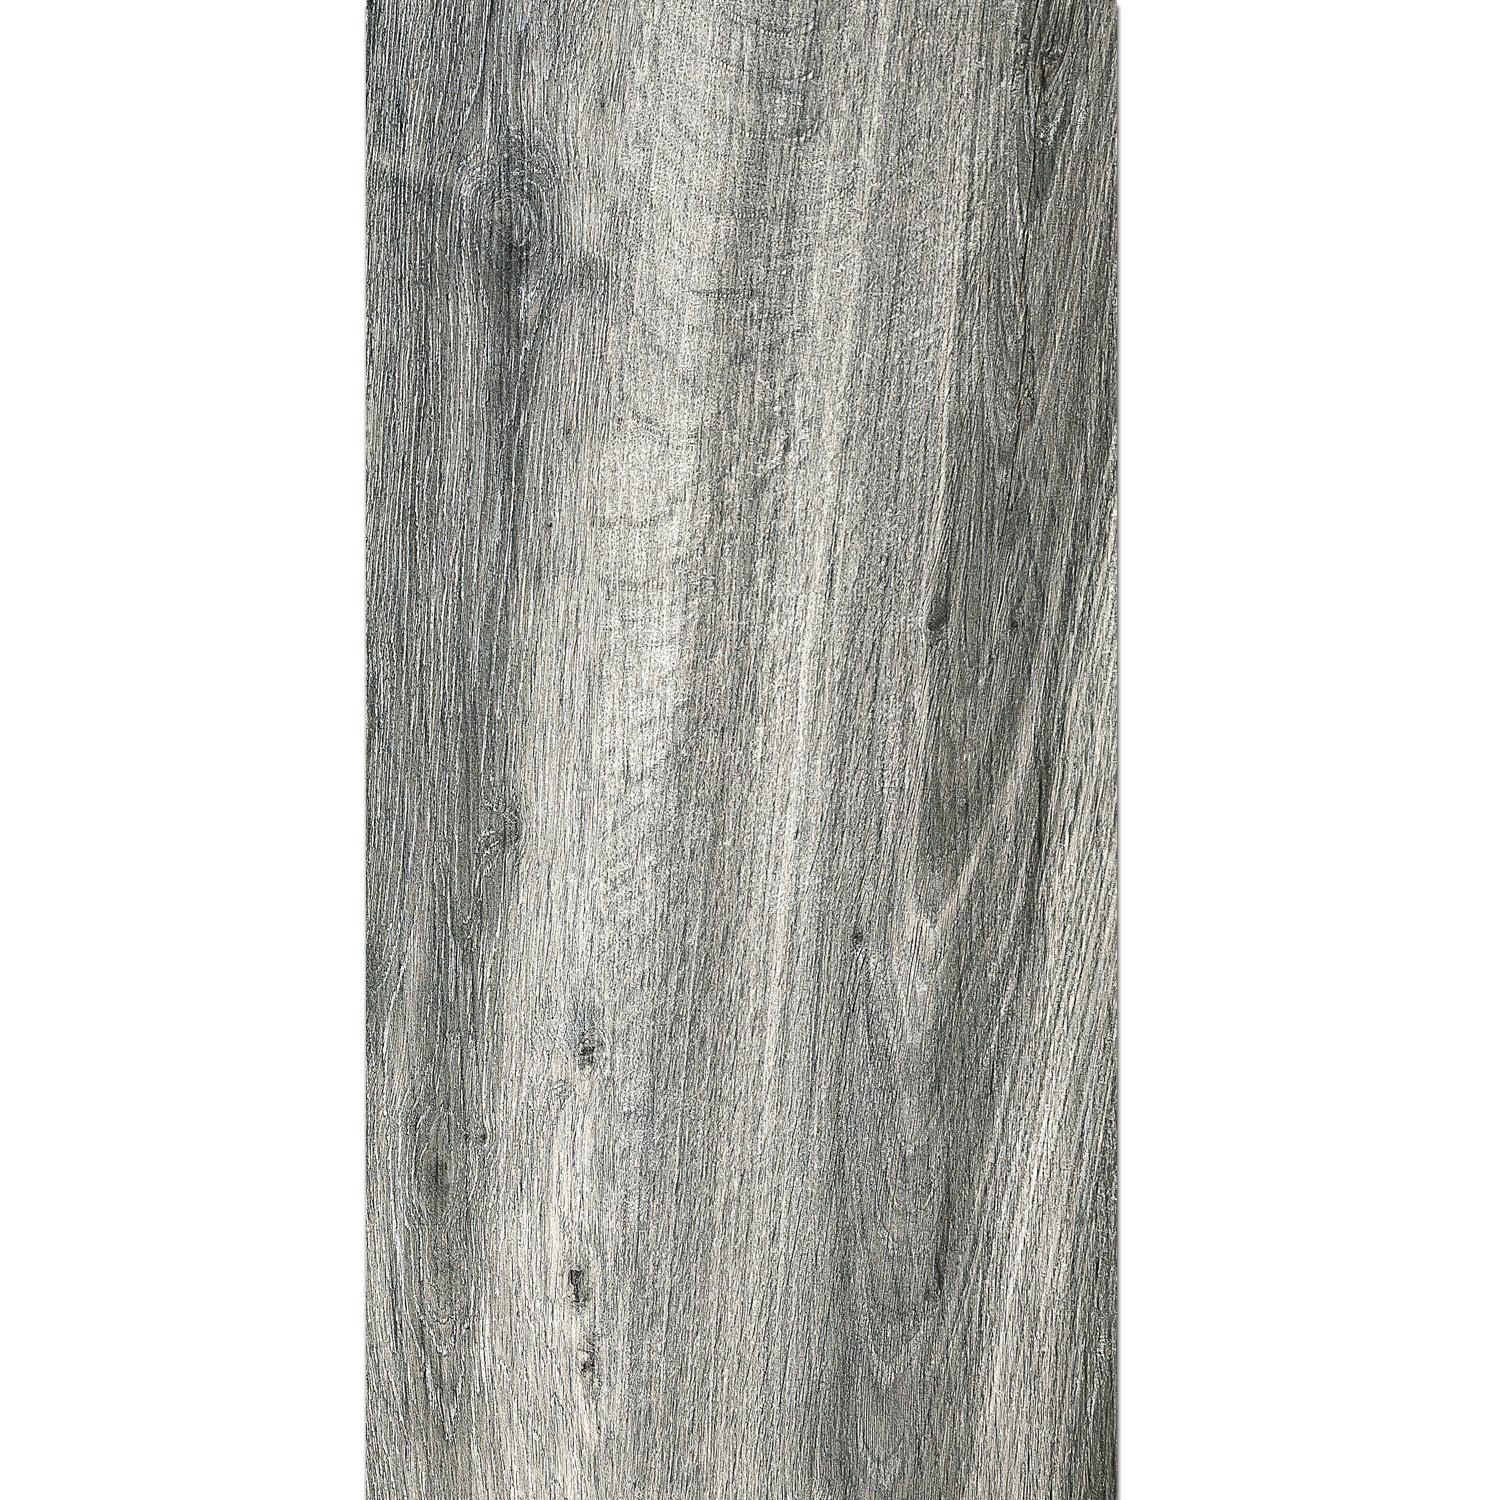 Terrasser Fliser Starwood Imiteret Træ Grey 45x90cm